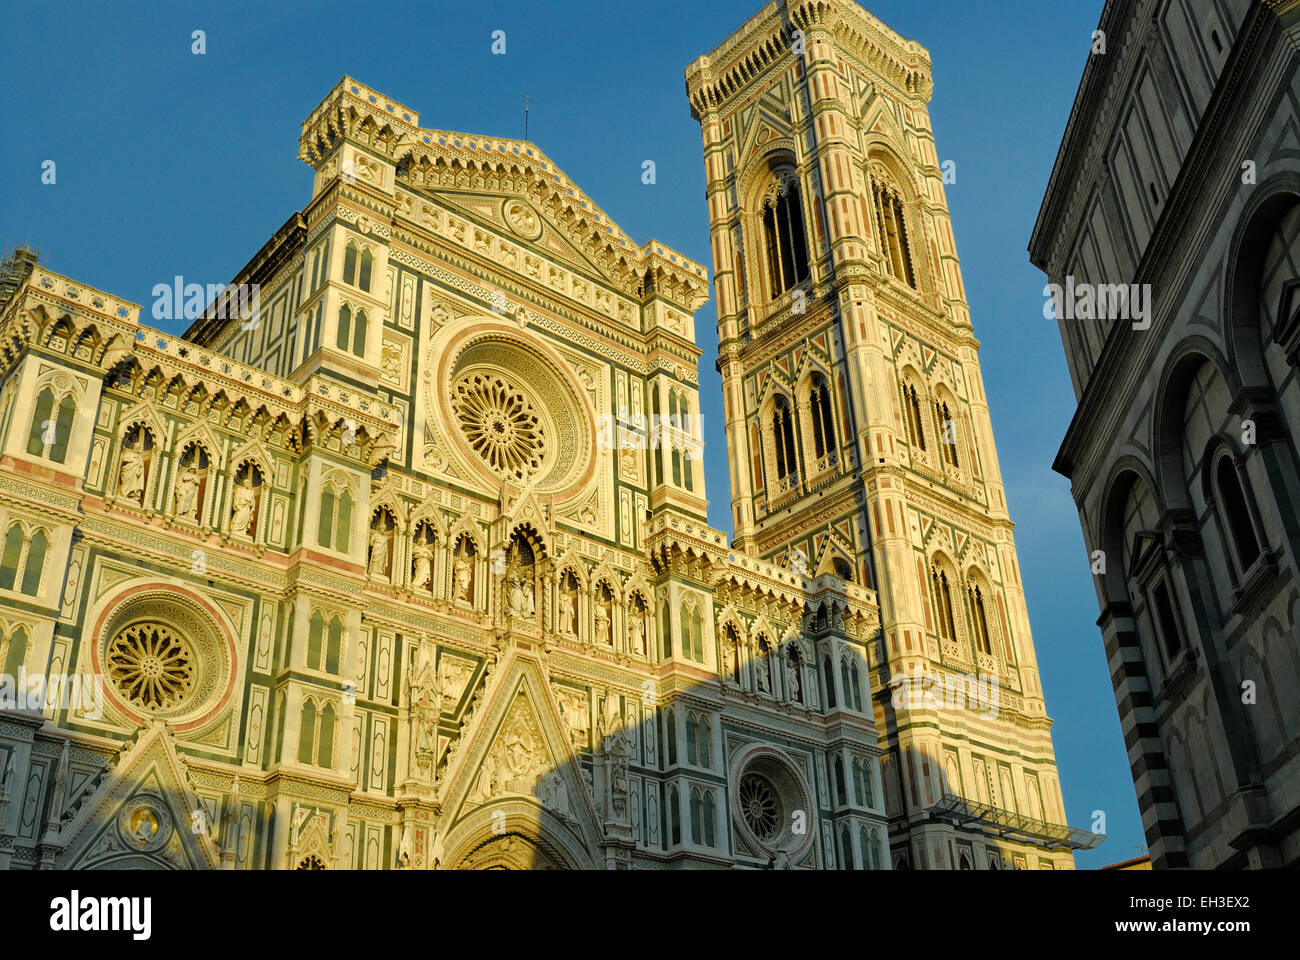 The Duomo - cathedral church (Basilica di Santa Maria del Fiore), Florence, Italy Stock Photo